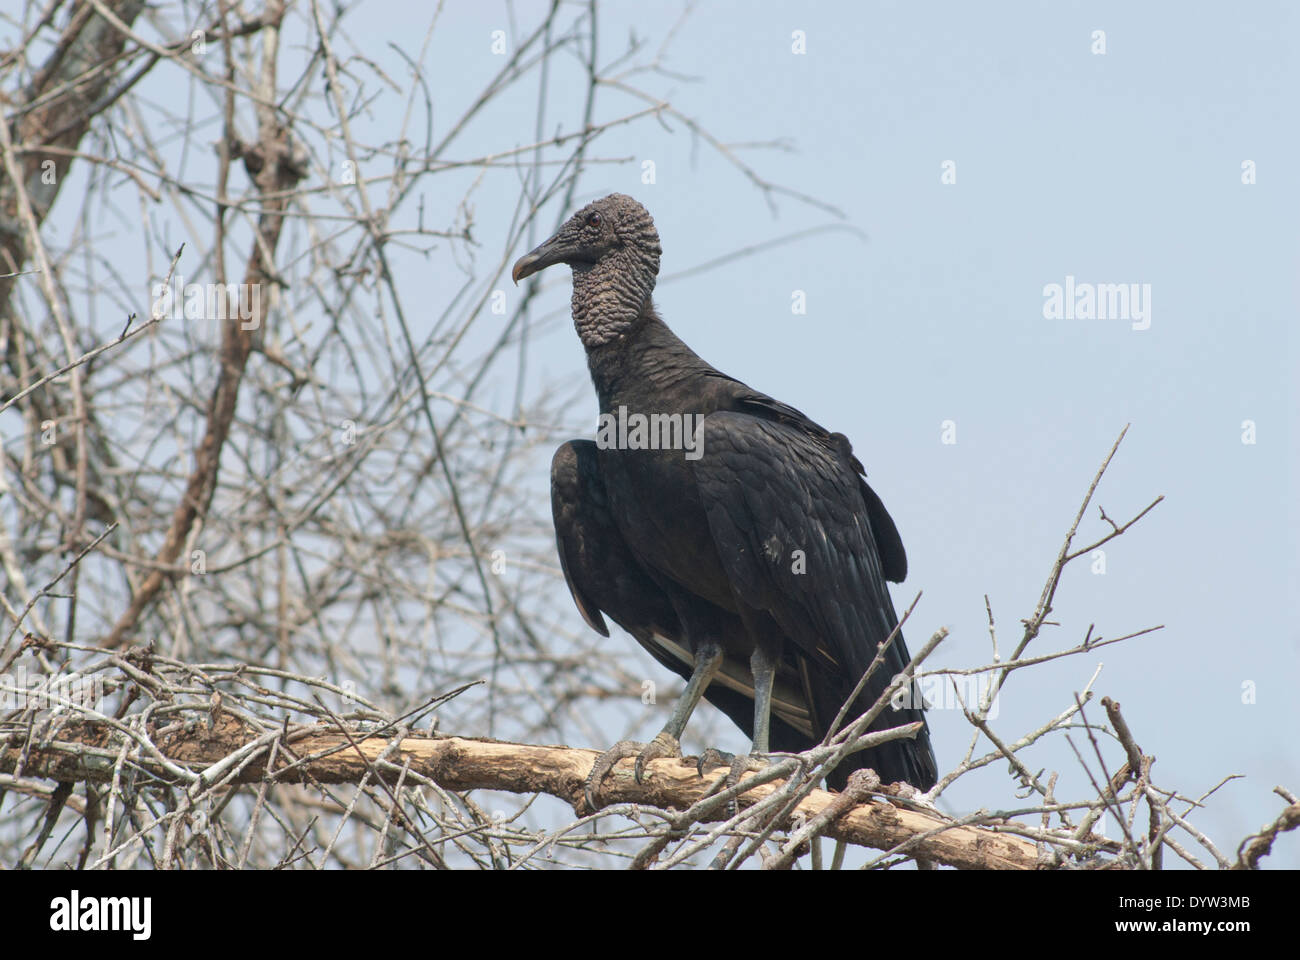 Black vulture (Coragyps atratus) perched in a small tree. Stock Photo